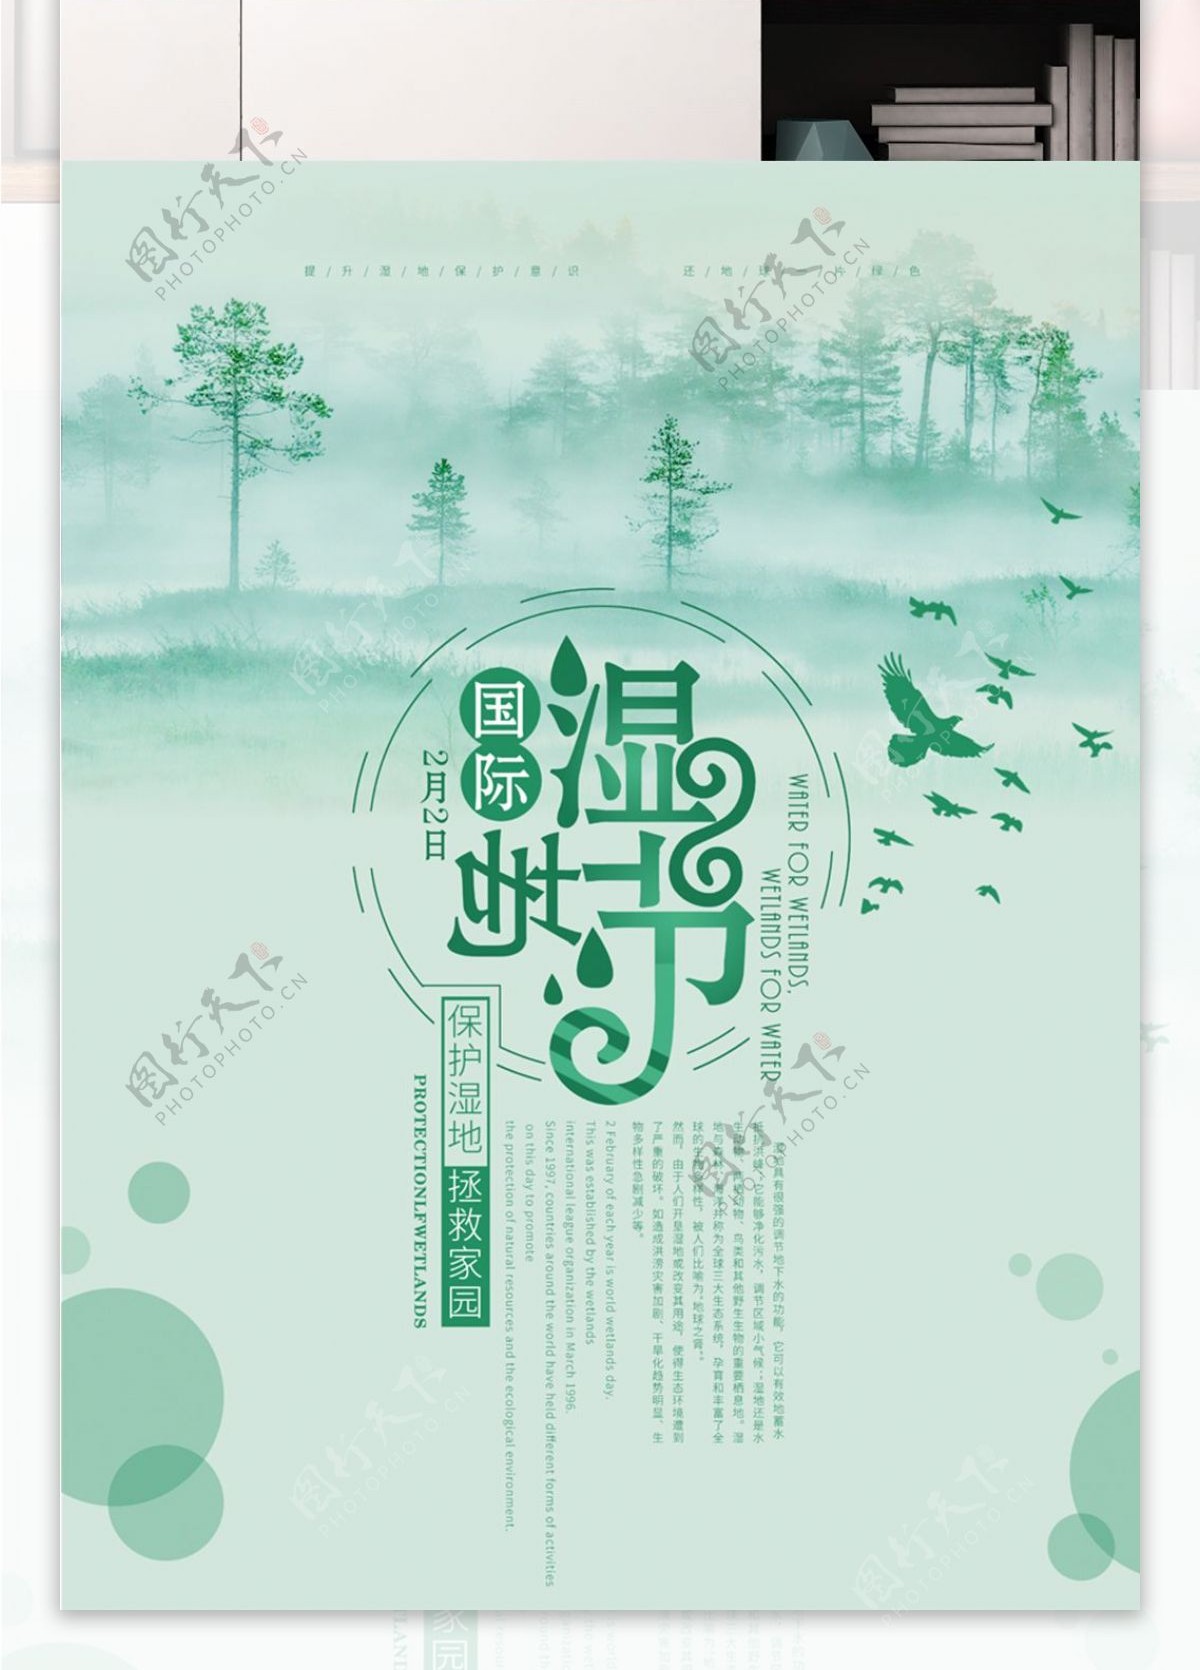 简约国际湿地节节日宣传海报PSD源文件